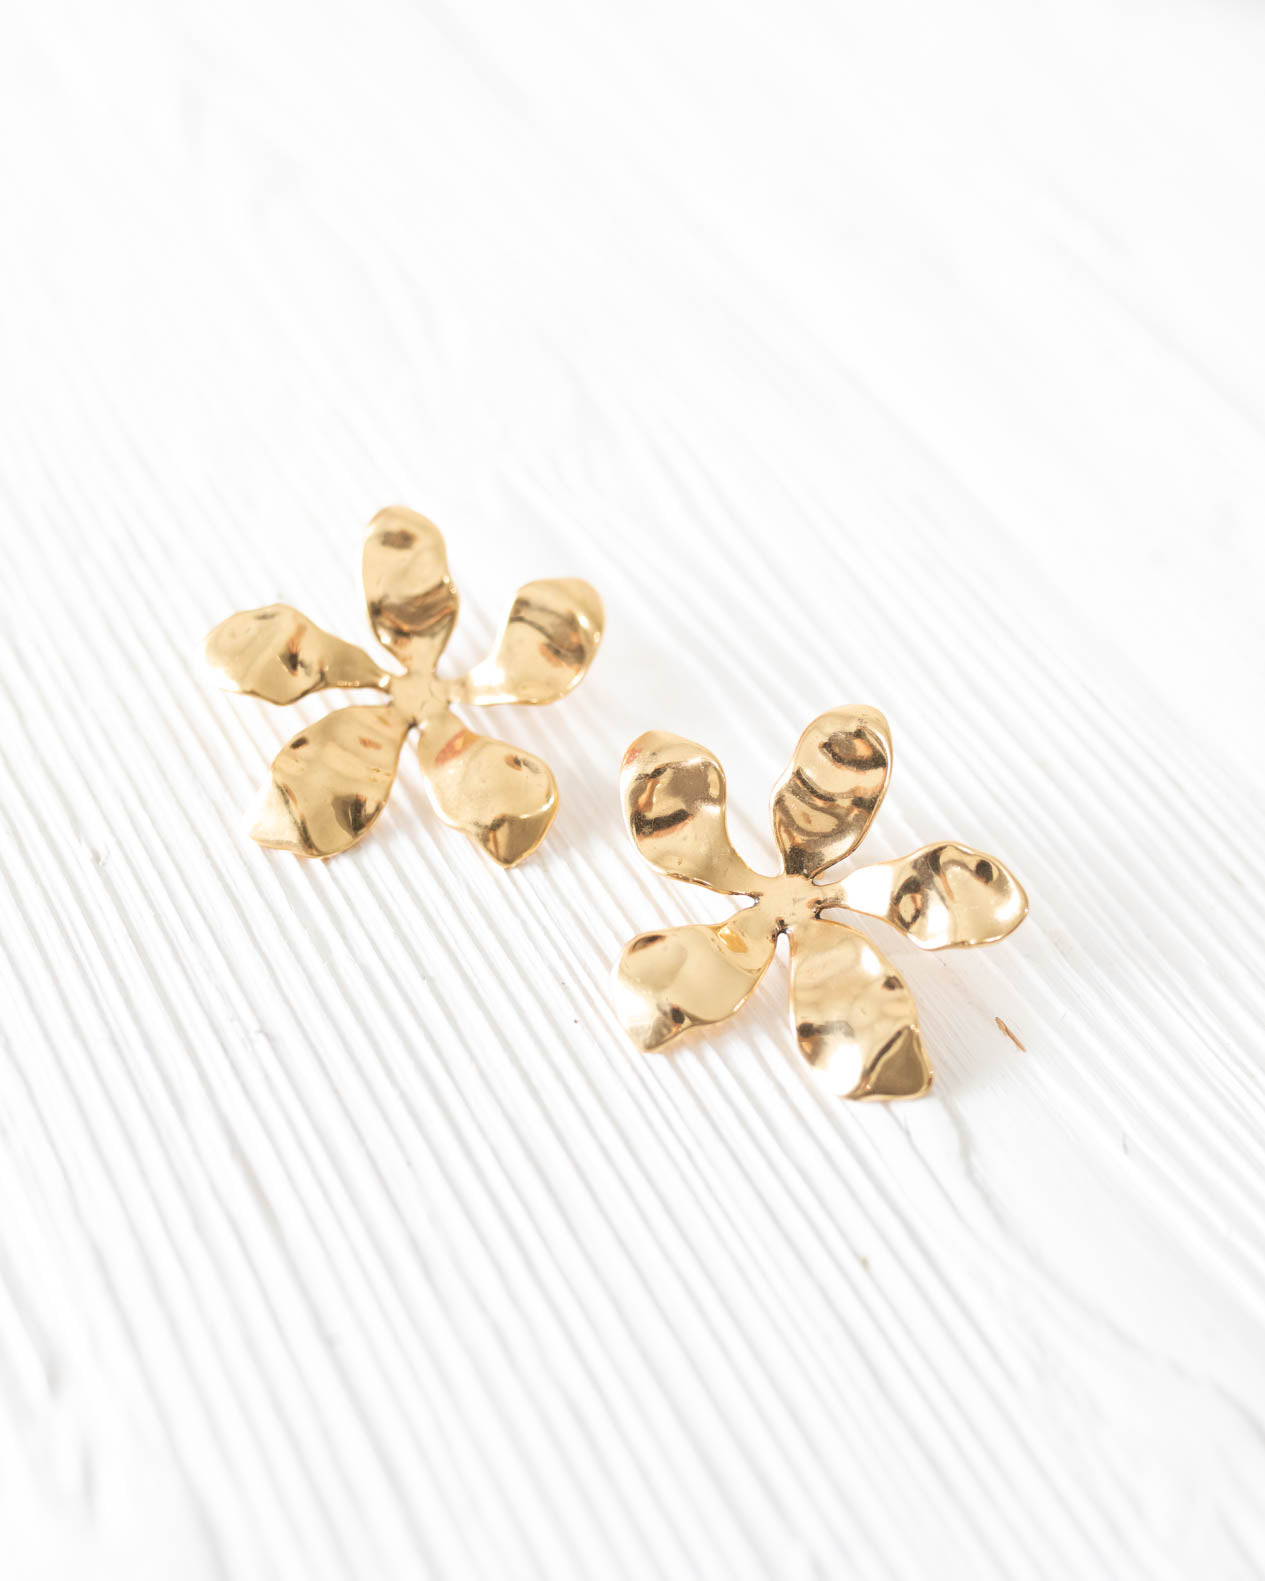 Tangier Earrings in Gold by Mignonne Gavigan